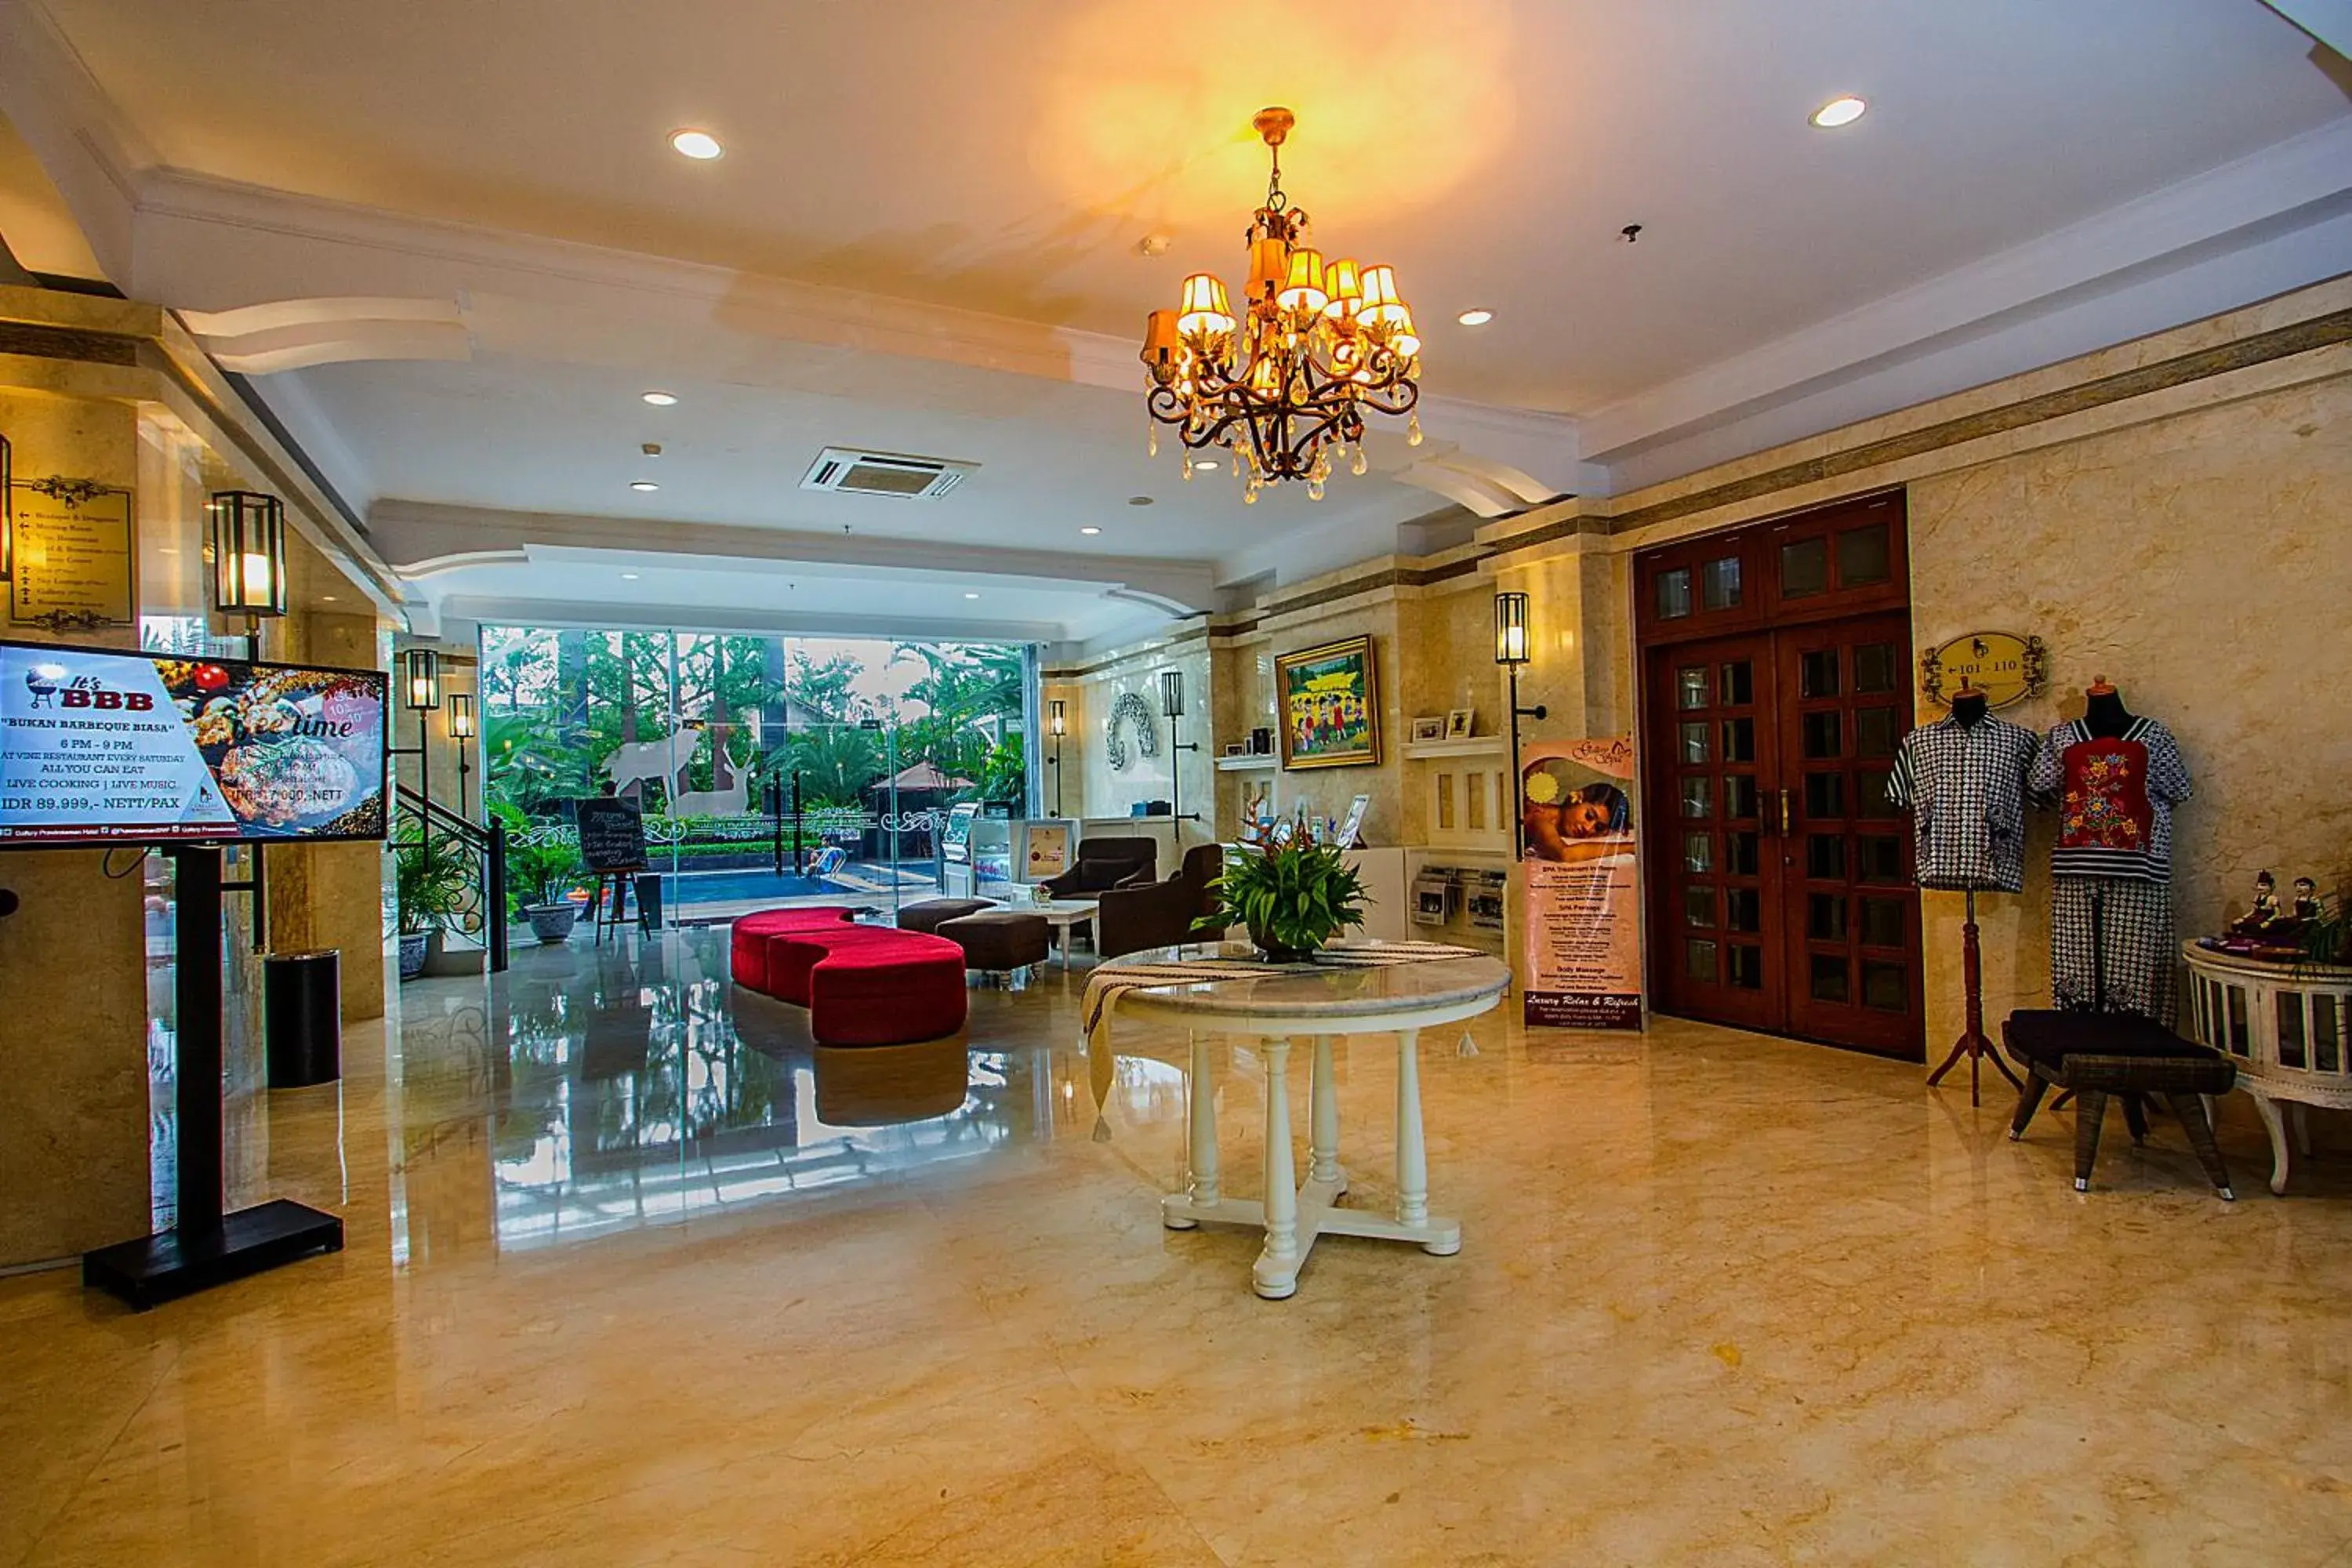 Lobby or reception, Lobby/Reception in Gallery Prawirotaman Hotel